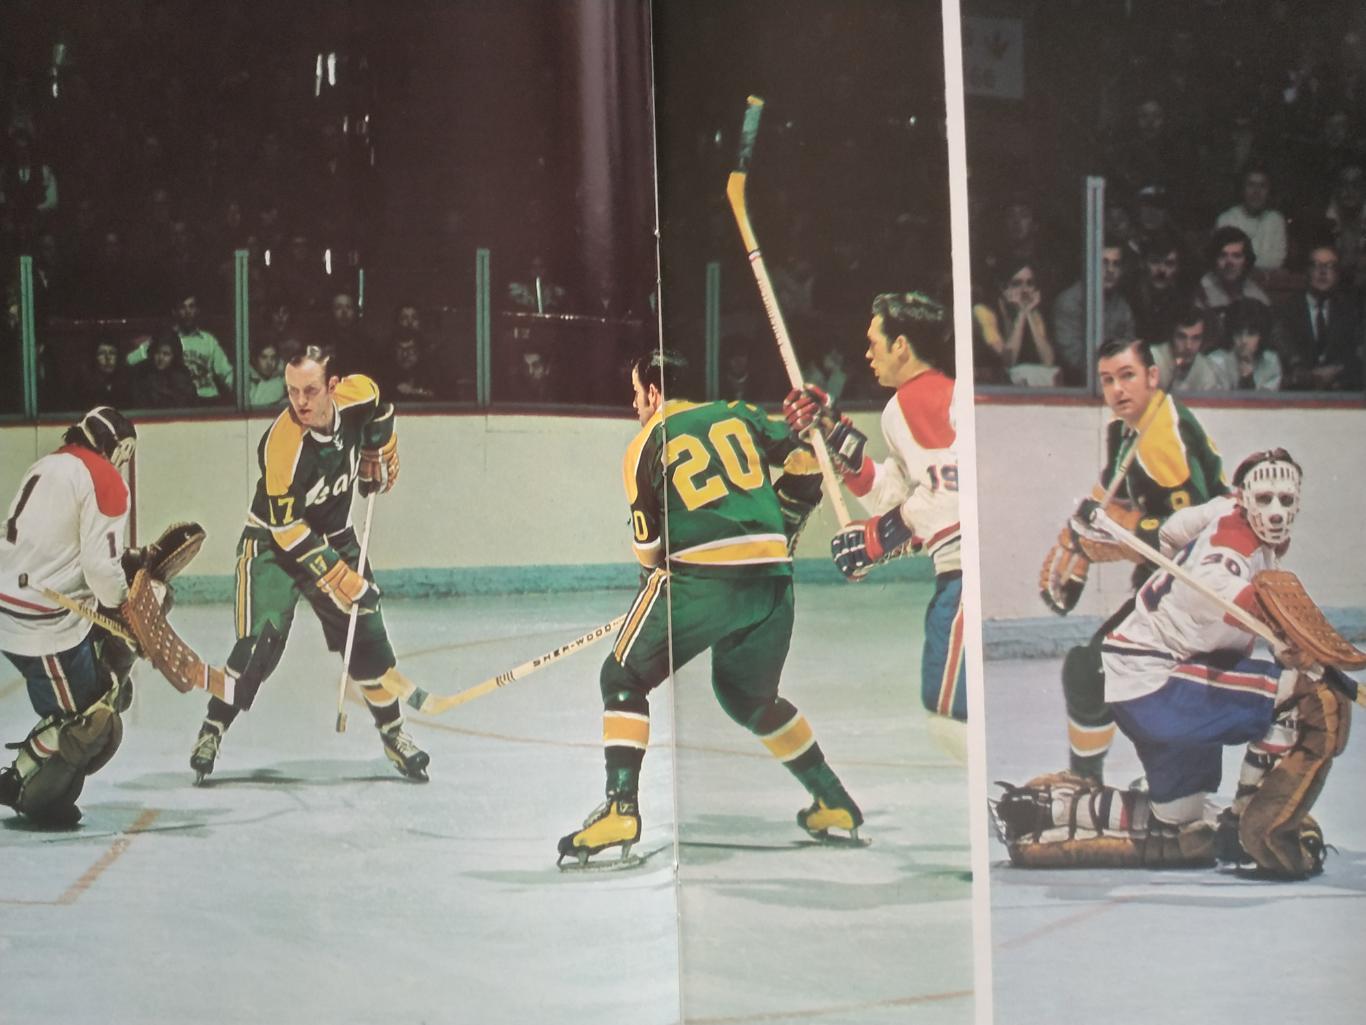 ХОККЕЙ ПРОГРАММА АЛЬБОМ КАЛИФОРНИЯ НХЛ NHL 1971 NOV.16 CALIFORNIA PROGRAM 4